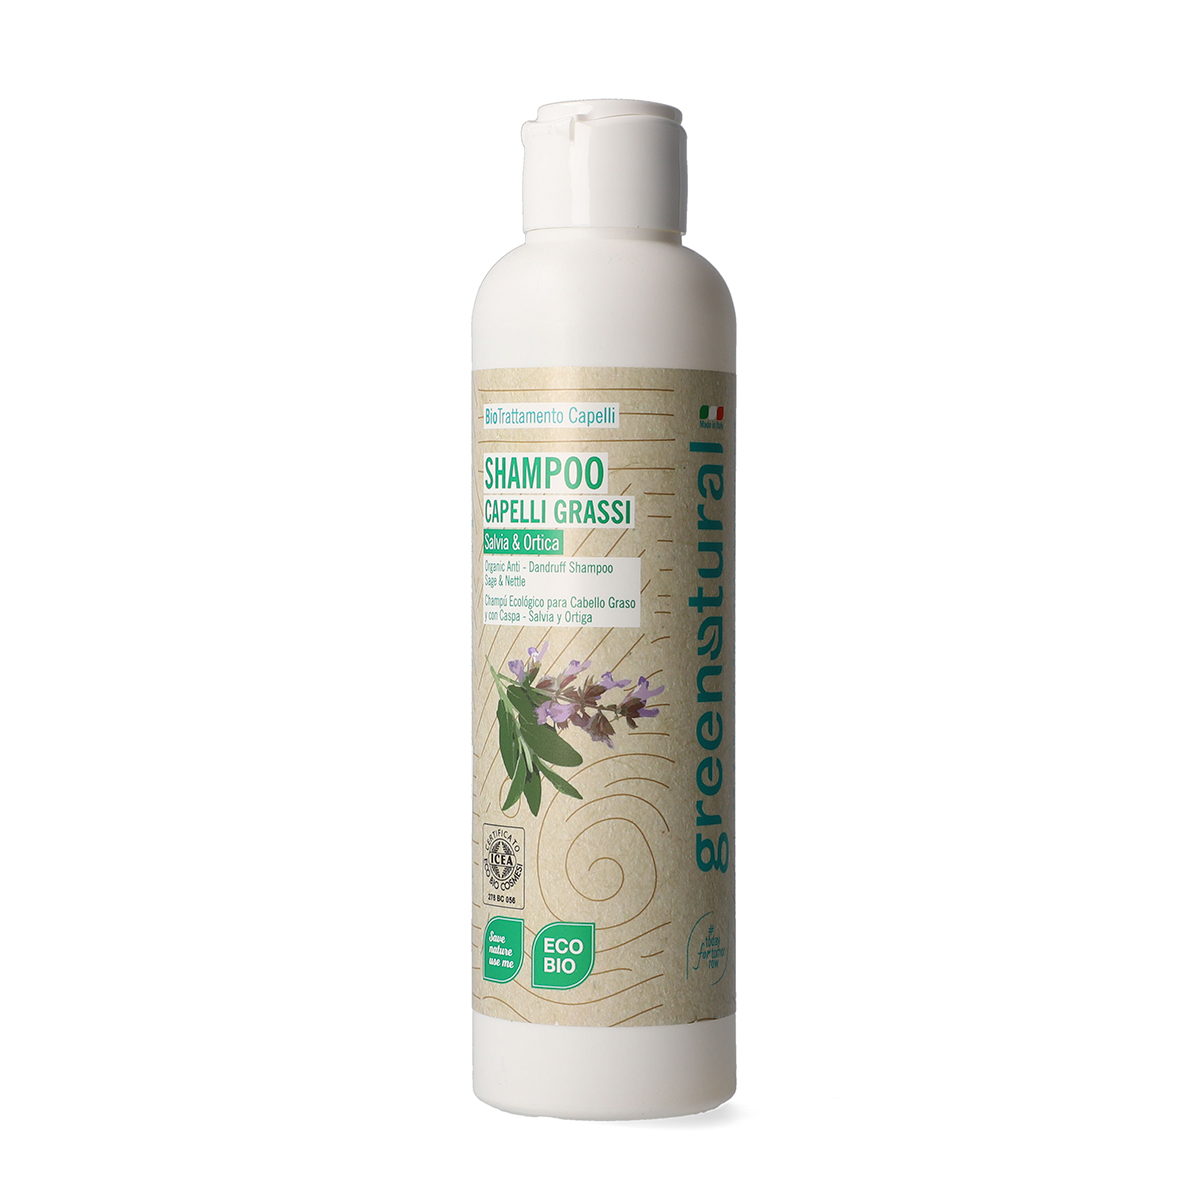 Shampoo antiforfora GN SALVIA & ORTICA - eco e bio - 250ml